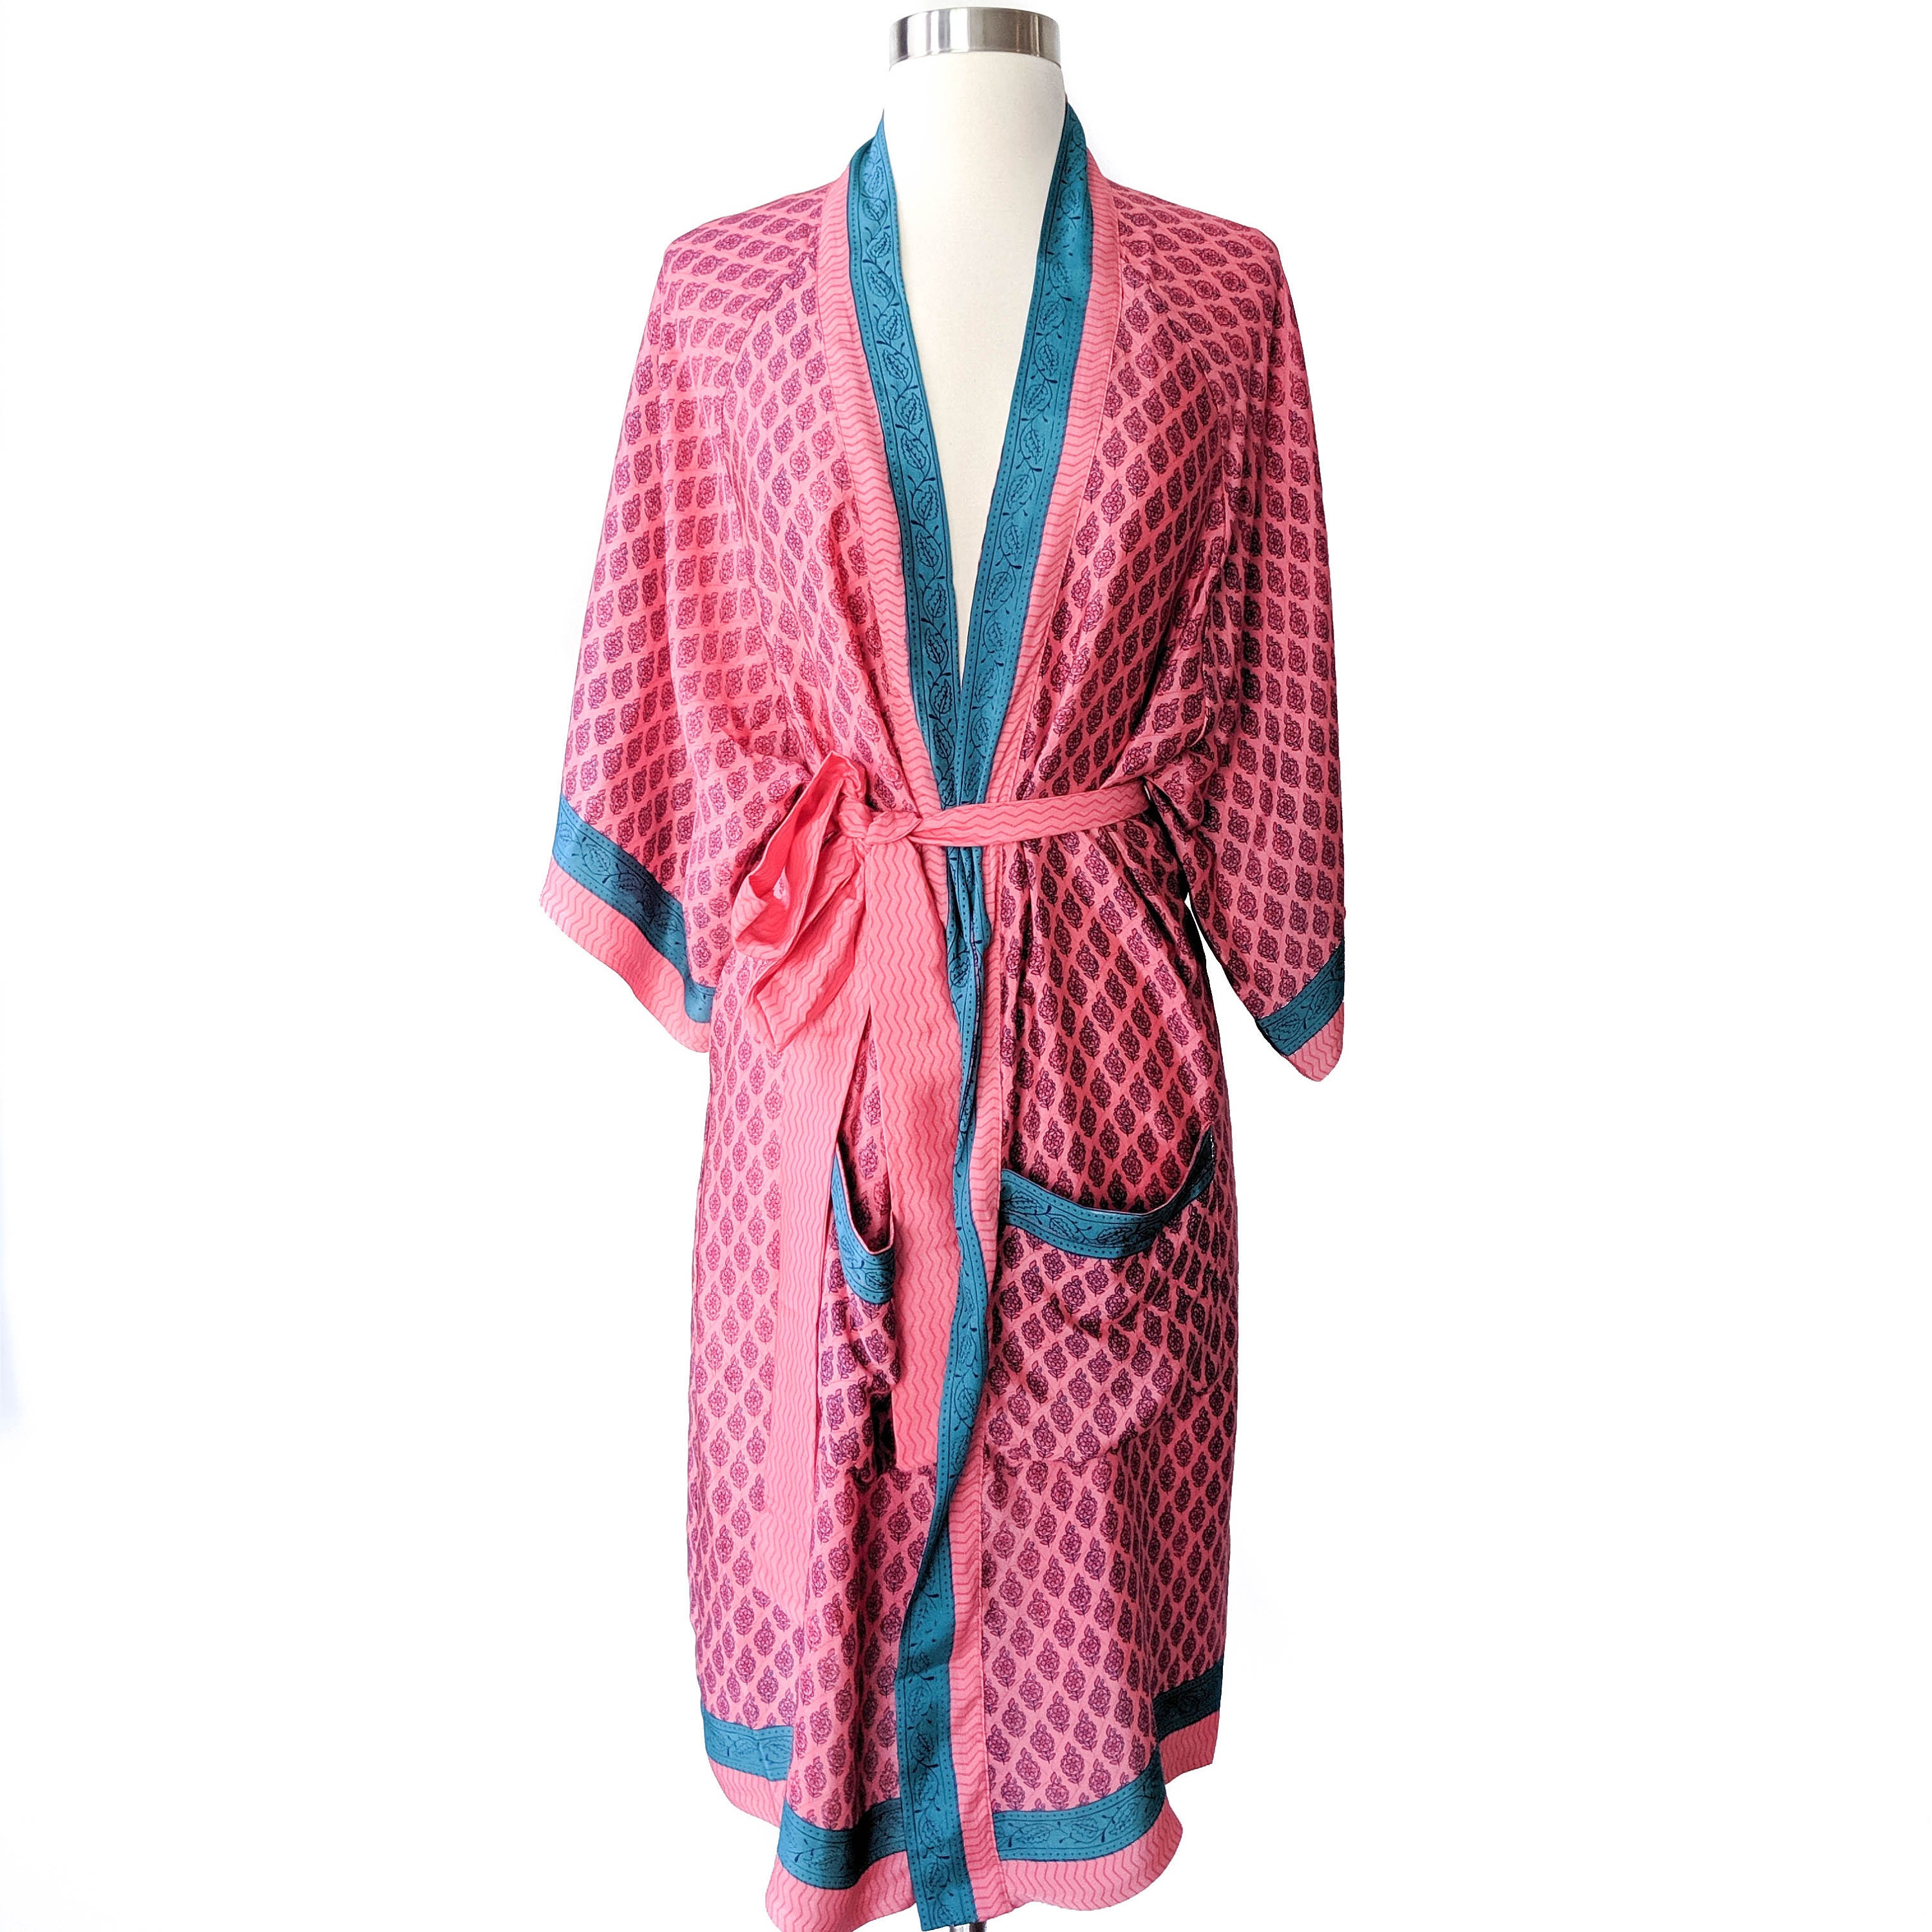 SALE Kimono Robe Duster Dress Convertible Wrap Top Boho | Etsy